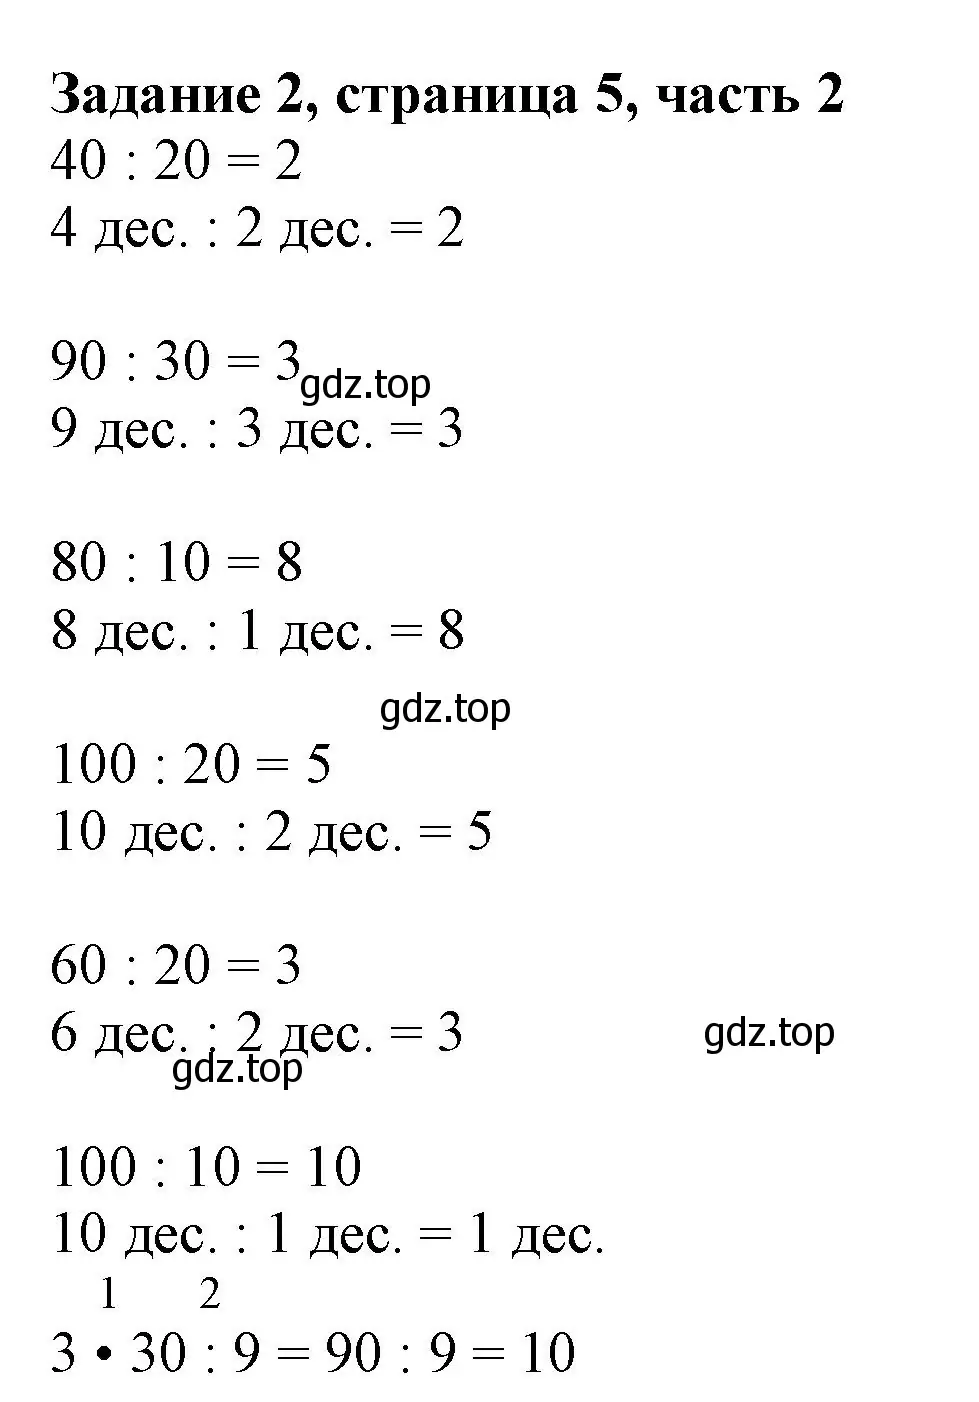 Решение номер 2 (страница 5) гдз по математике 3 класс Моро, Бантова, учебник 2 часть